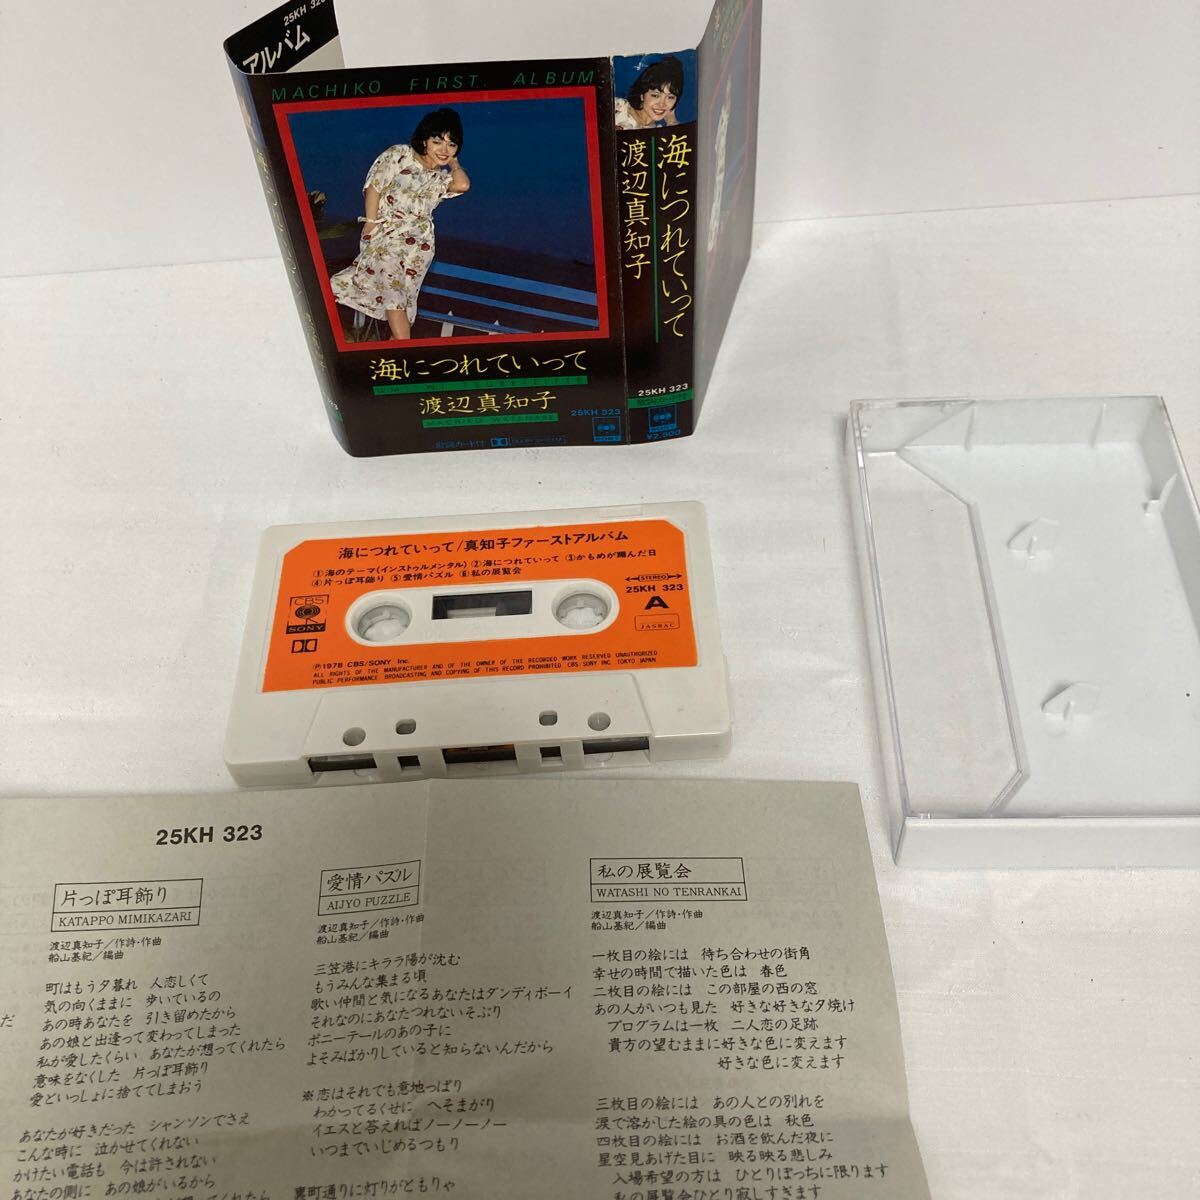 渡辺真知子「海につれていって」カセット 25KH323 カセットテープ 歌詞カード付_画像1